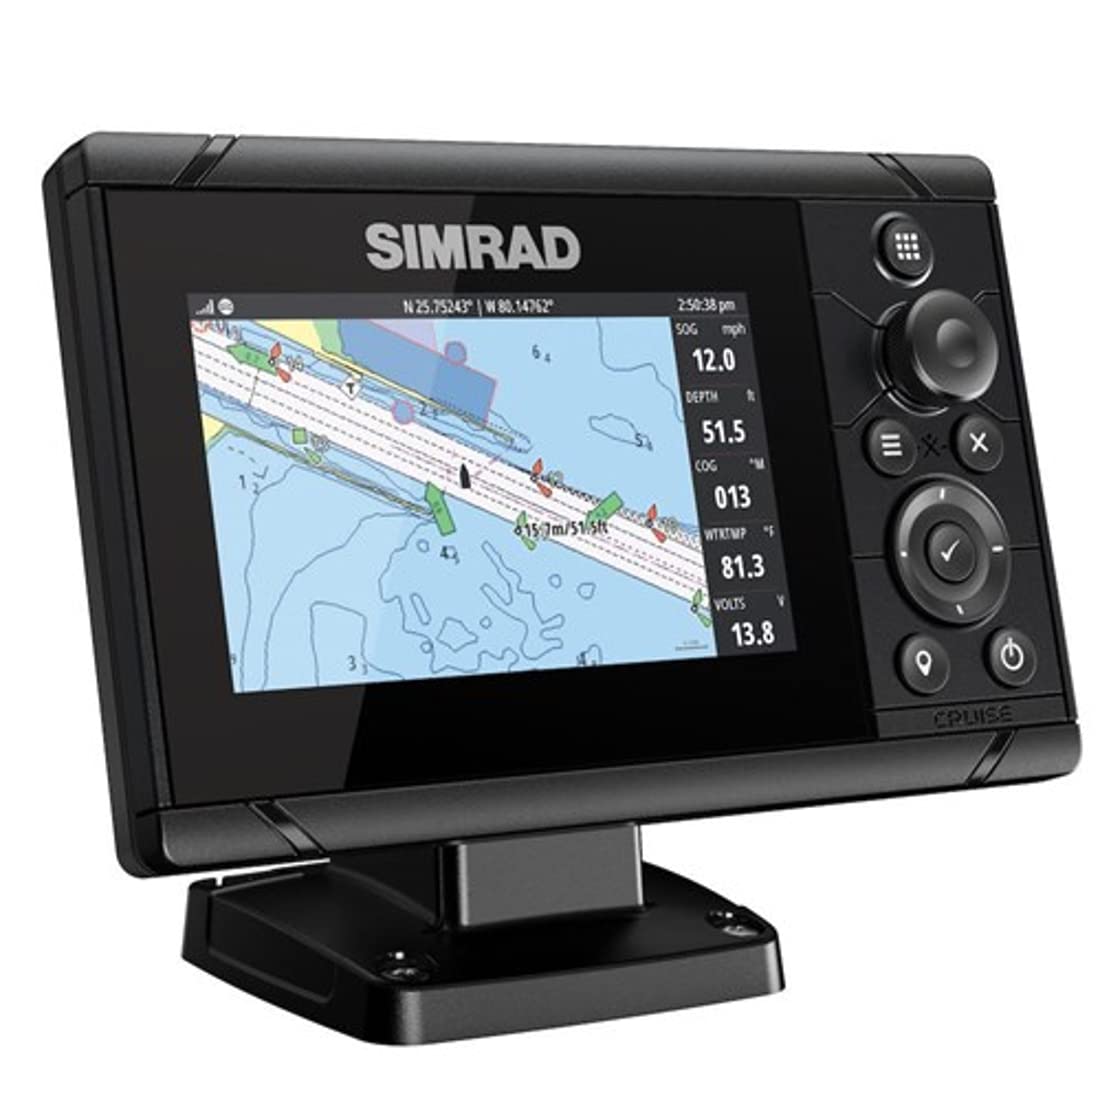 Simrad Cruise 5-inch US Coastal GPS Chartplotter with 83/200 Transom Mount Transducer-000-14995-001